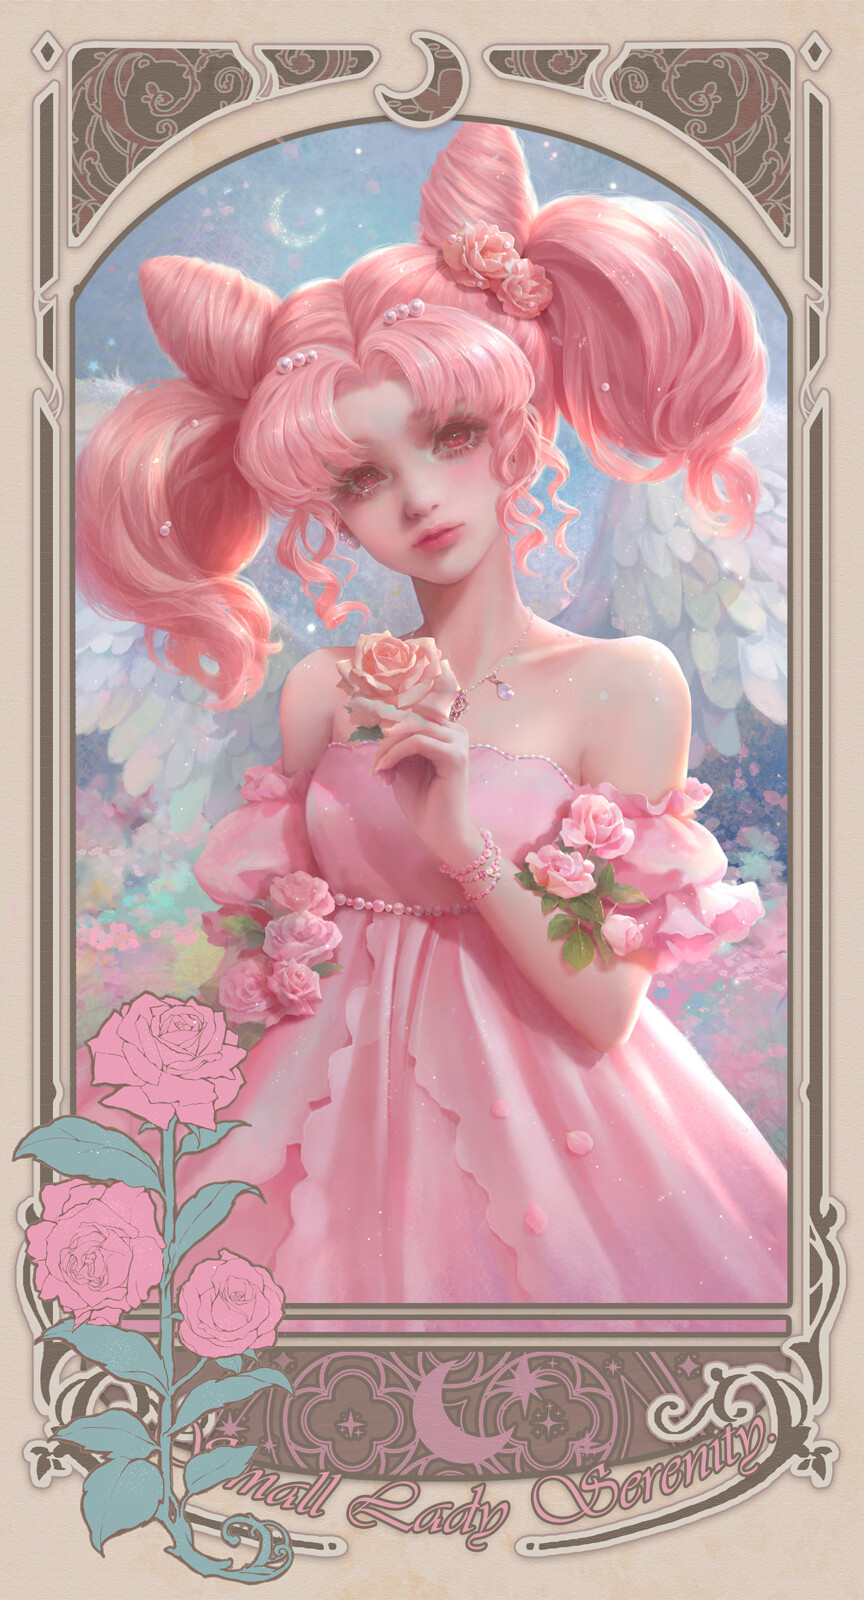 Sunmomo Drawing Sailor Moon Women Pink Hair Pink Eyes Dress Flowers Frame Anime Anime Girls 864x1600